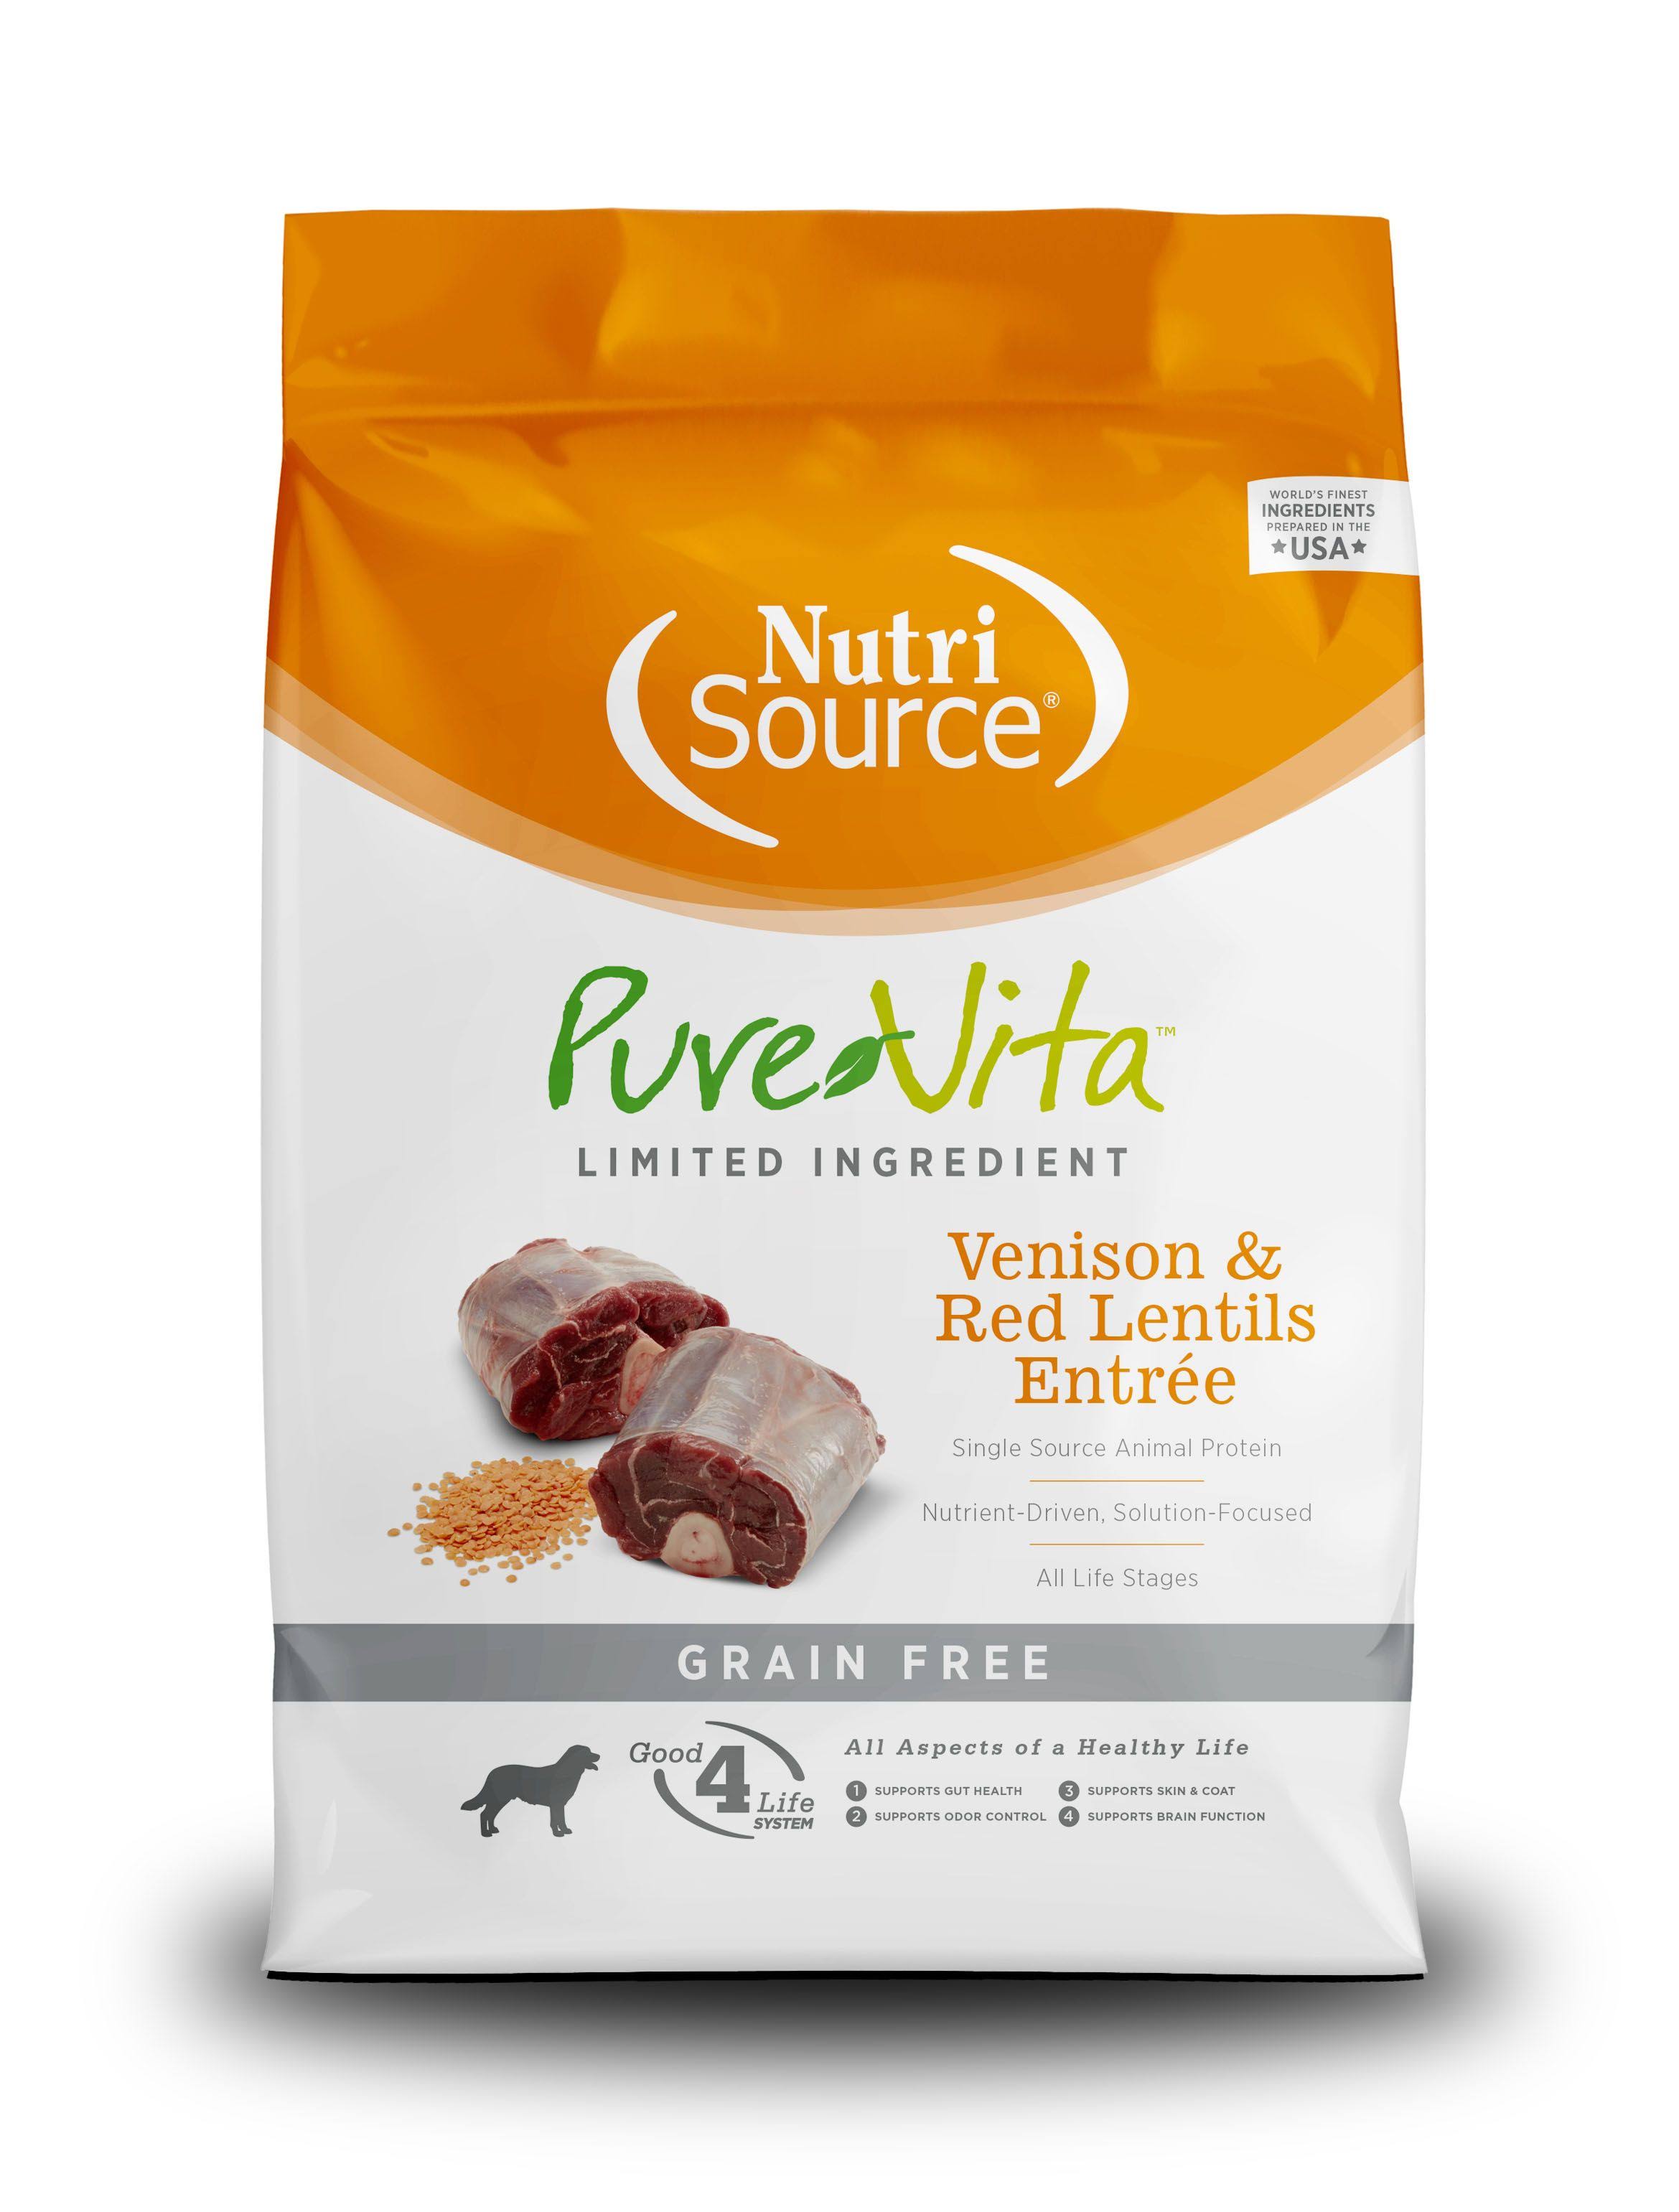 PureVita - Venison & Red Lentils Entree